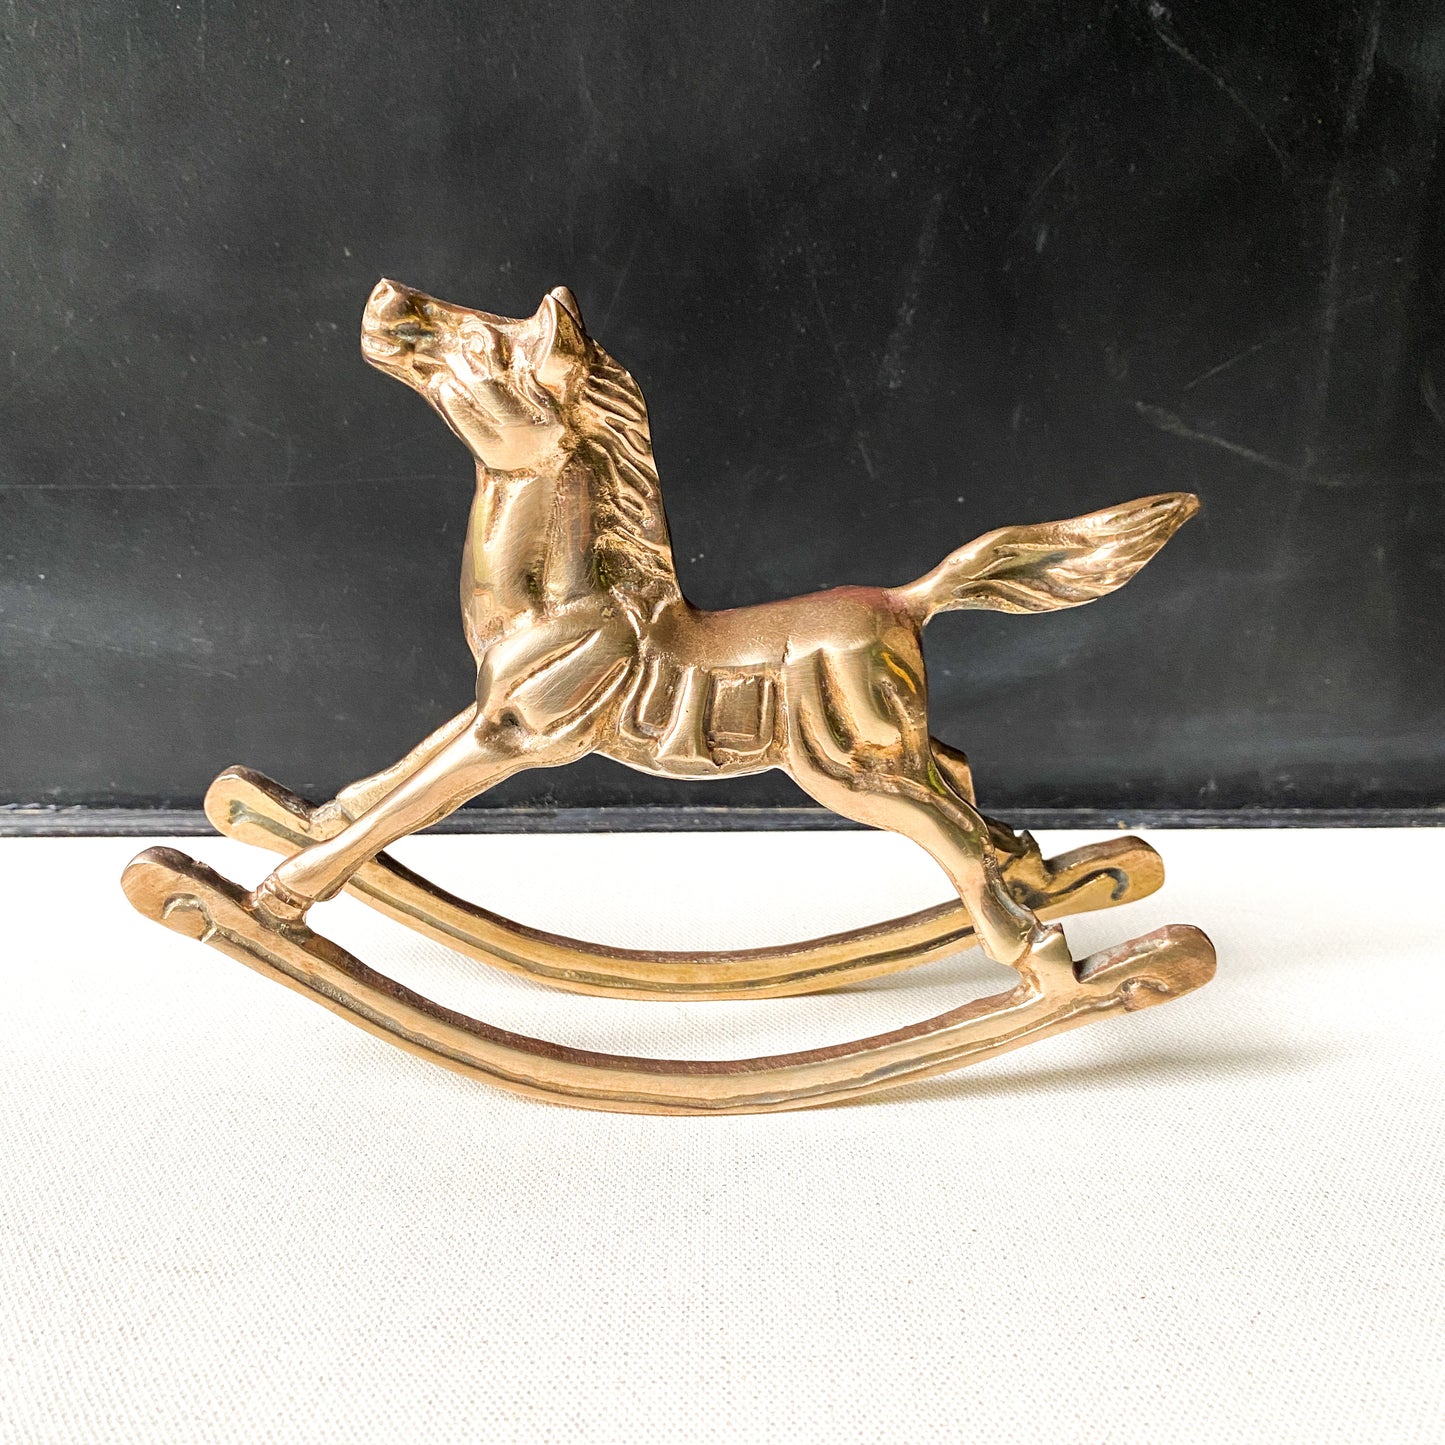 Vintage Brass Rocking Horse